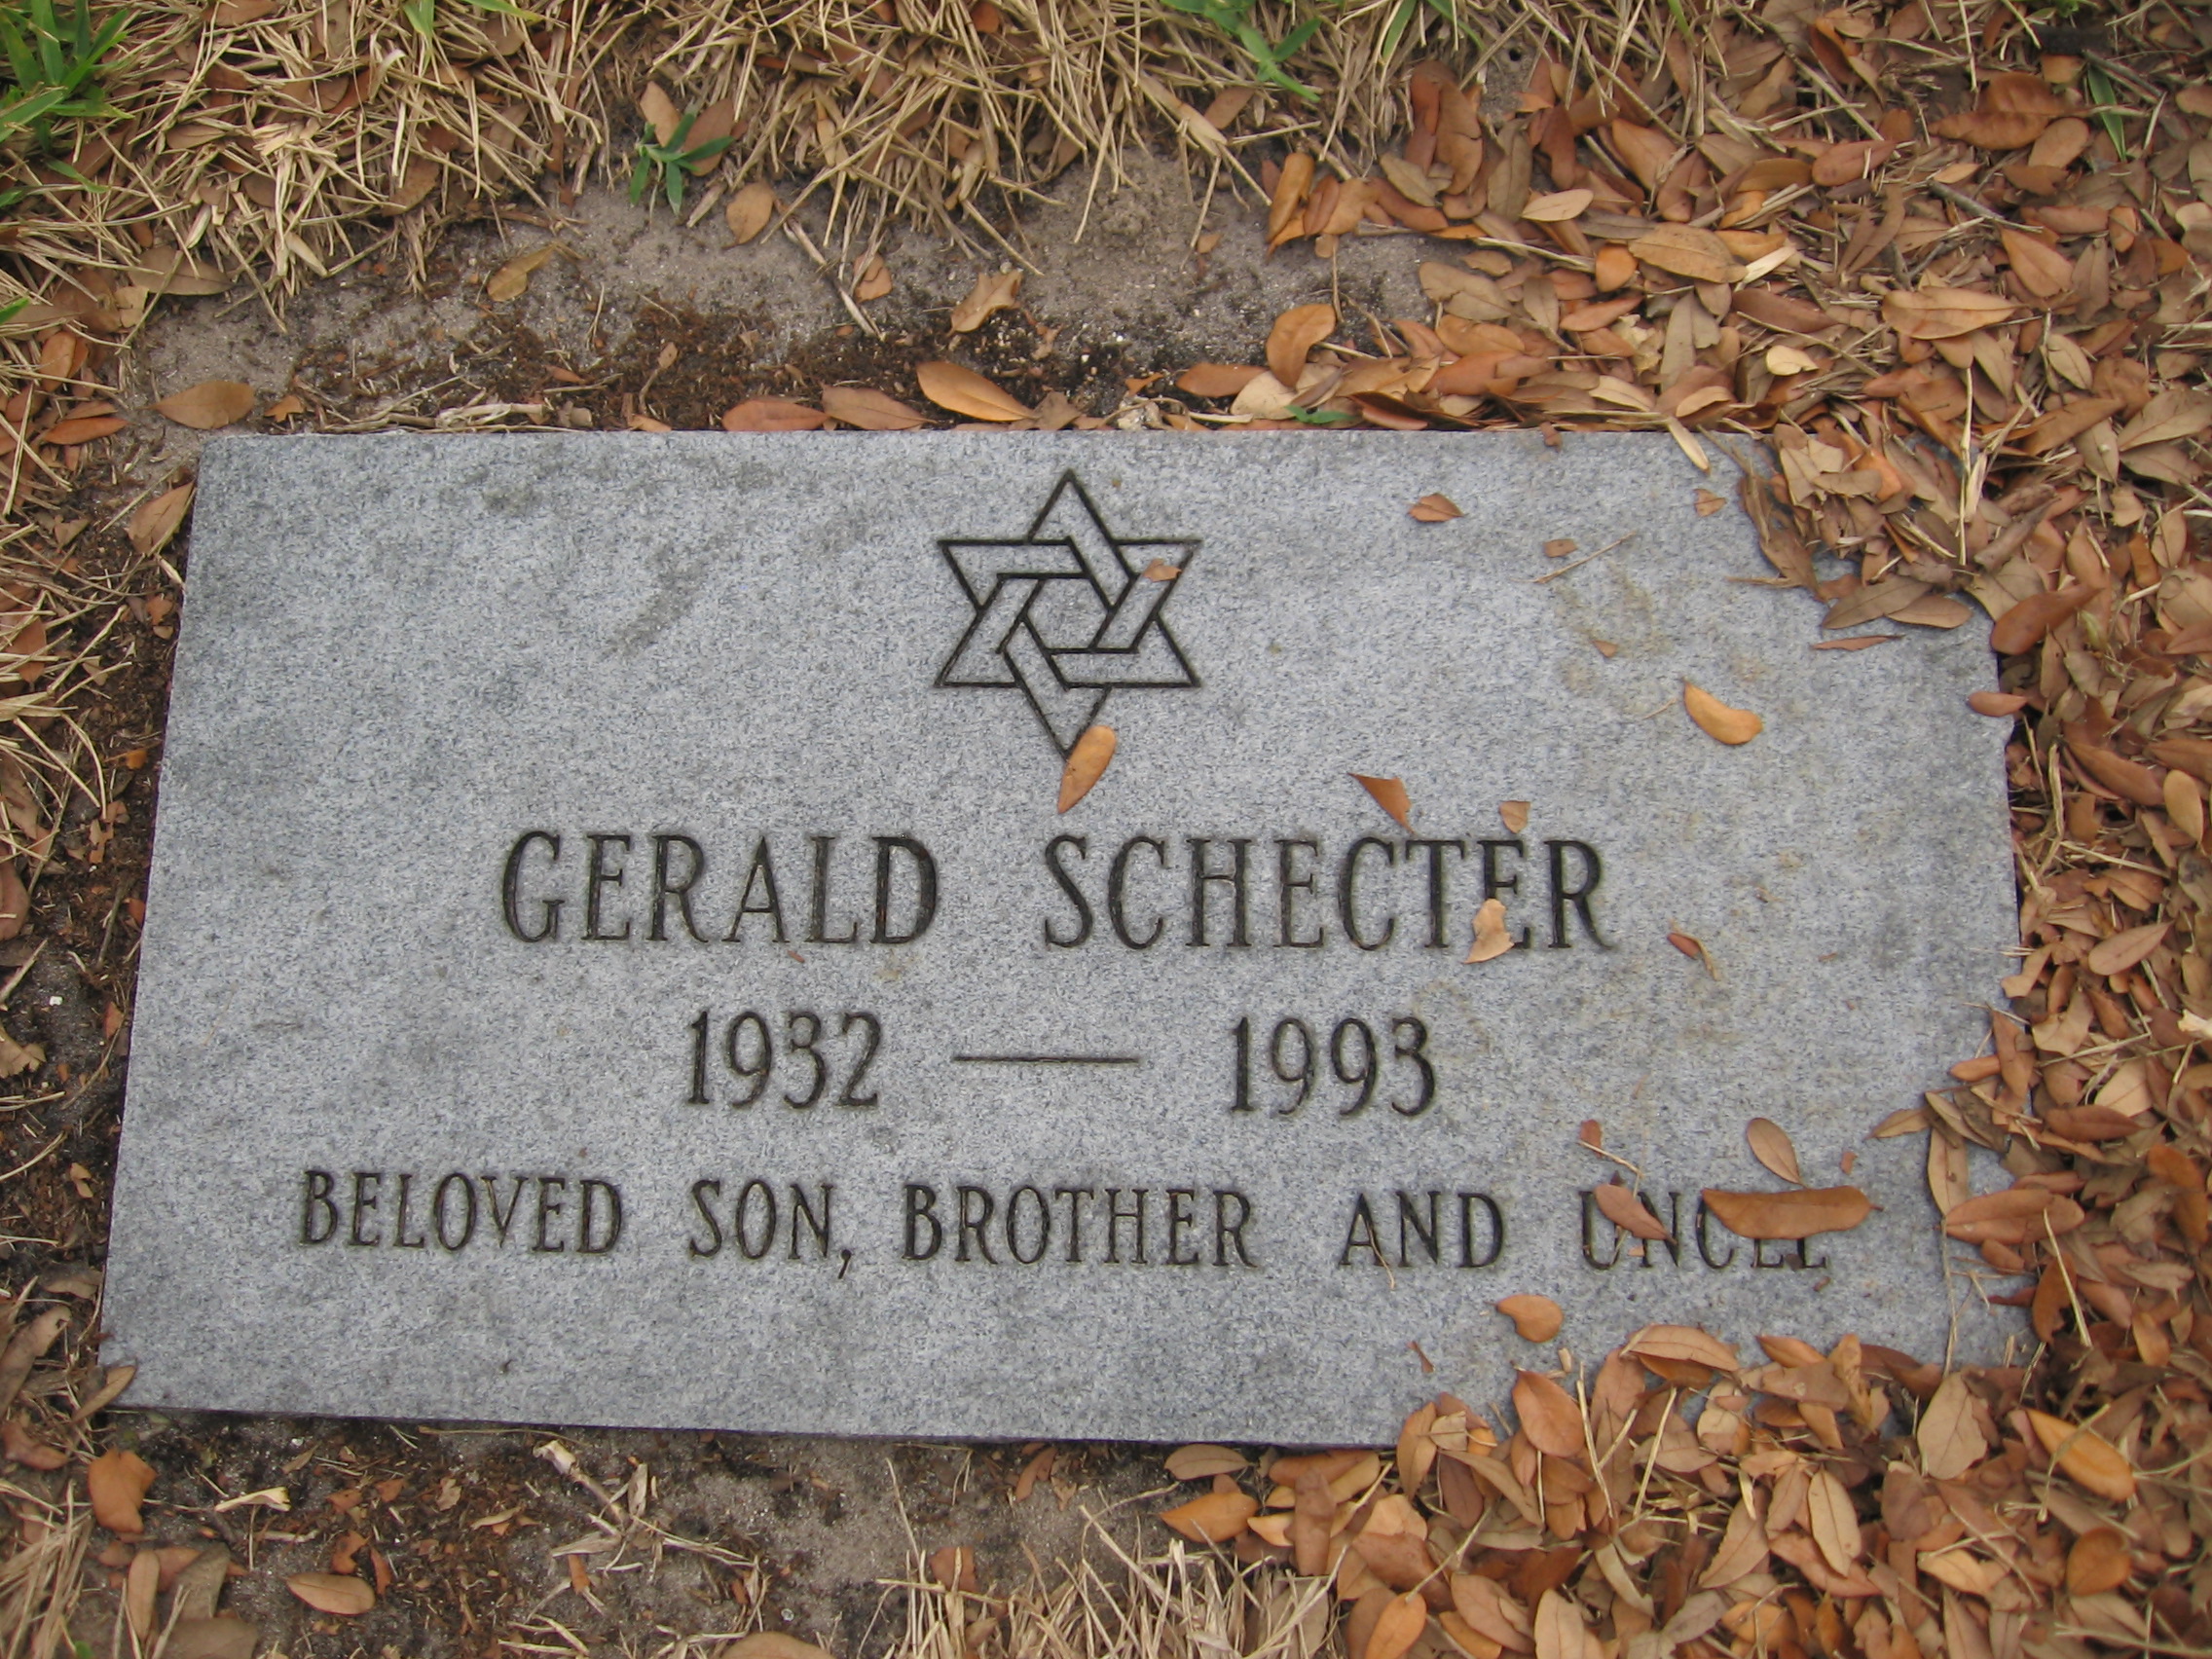 Gerald Schecter